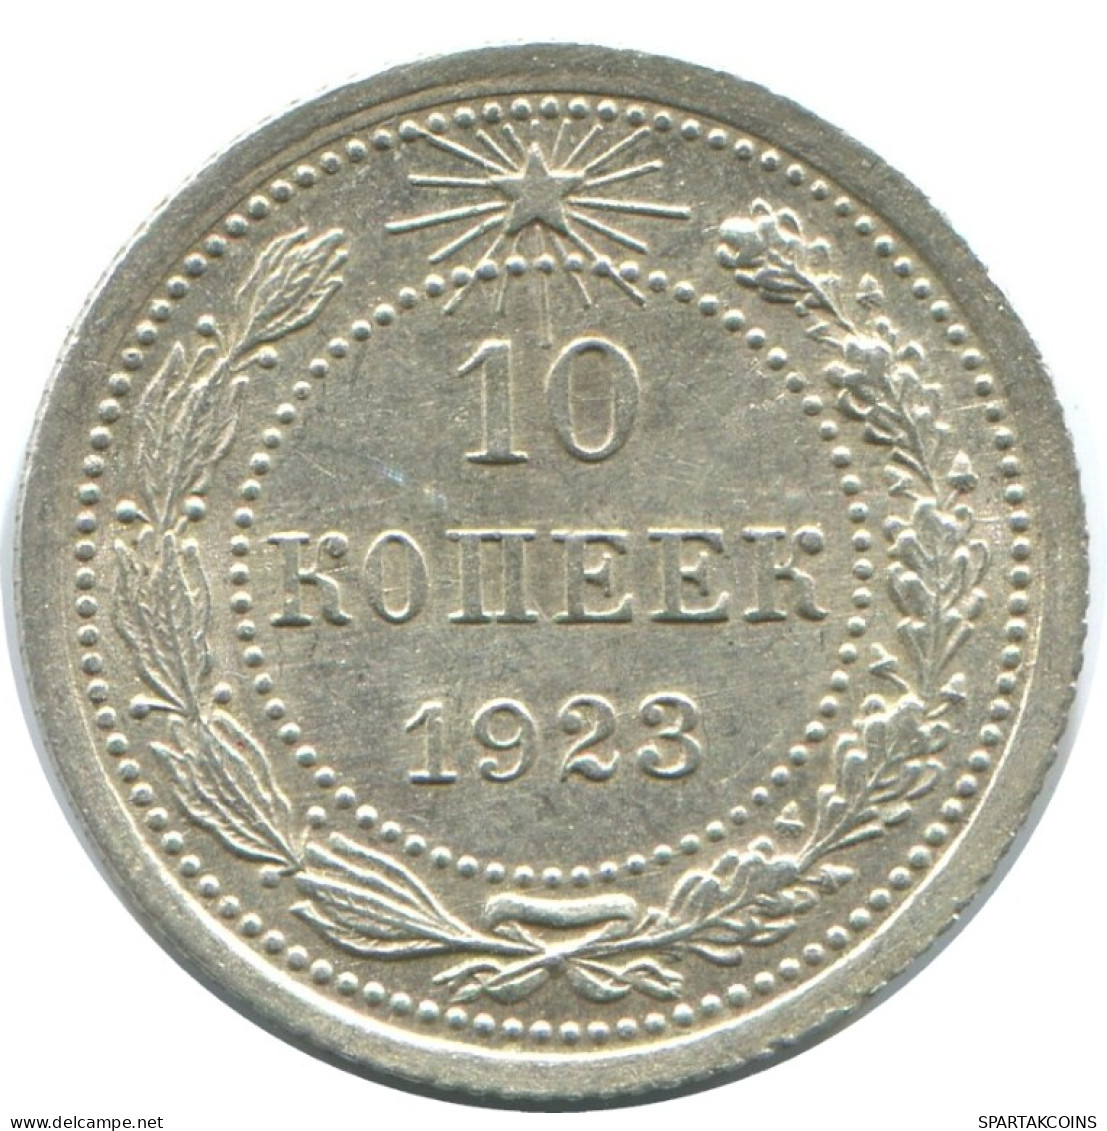 10 KOPEKS 1923 RUSSLAND RUSSIA RSFSR SILBER Münze HIGH GRADE #AE982.4.D.A - Russia